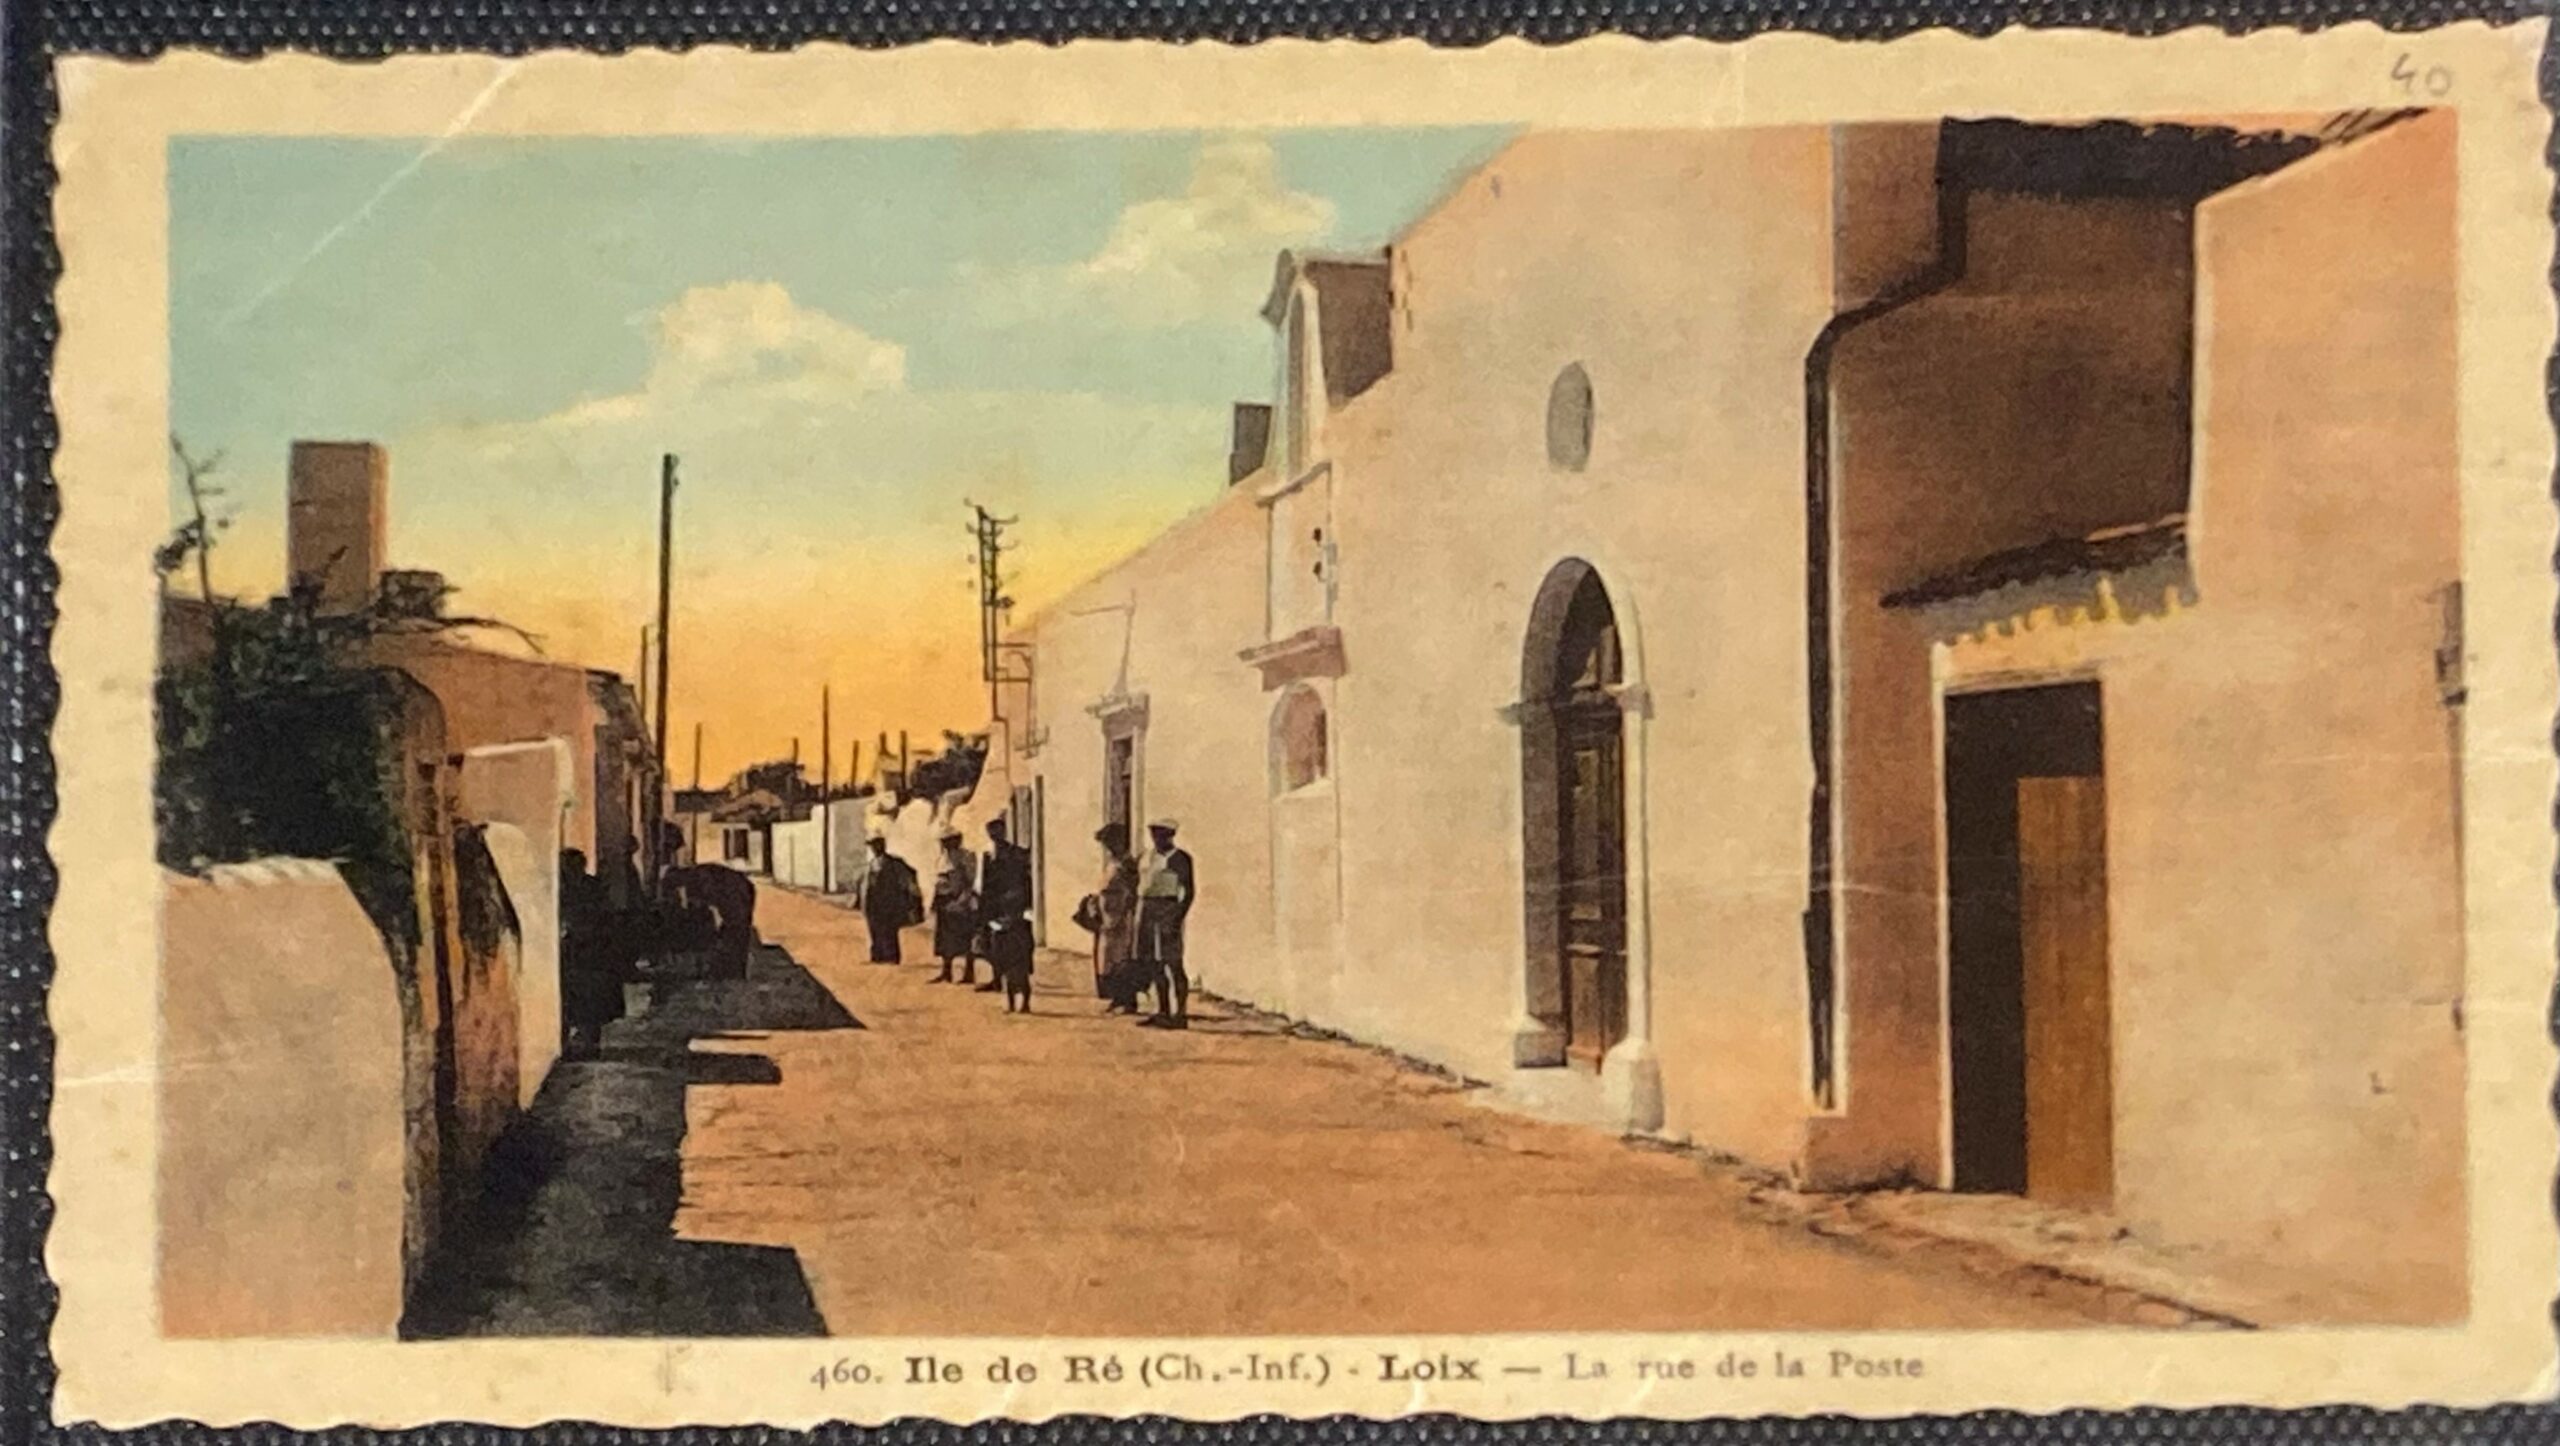 carte postale ancienne colorisee rue de la poste loix